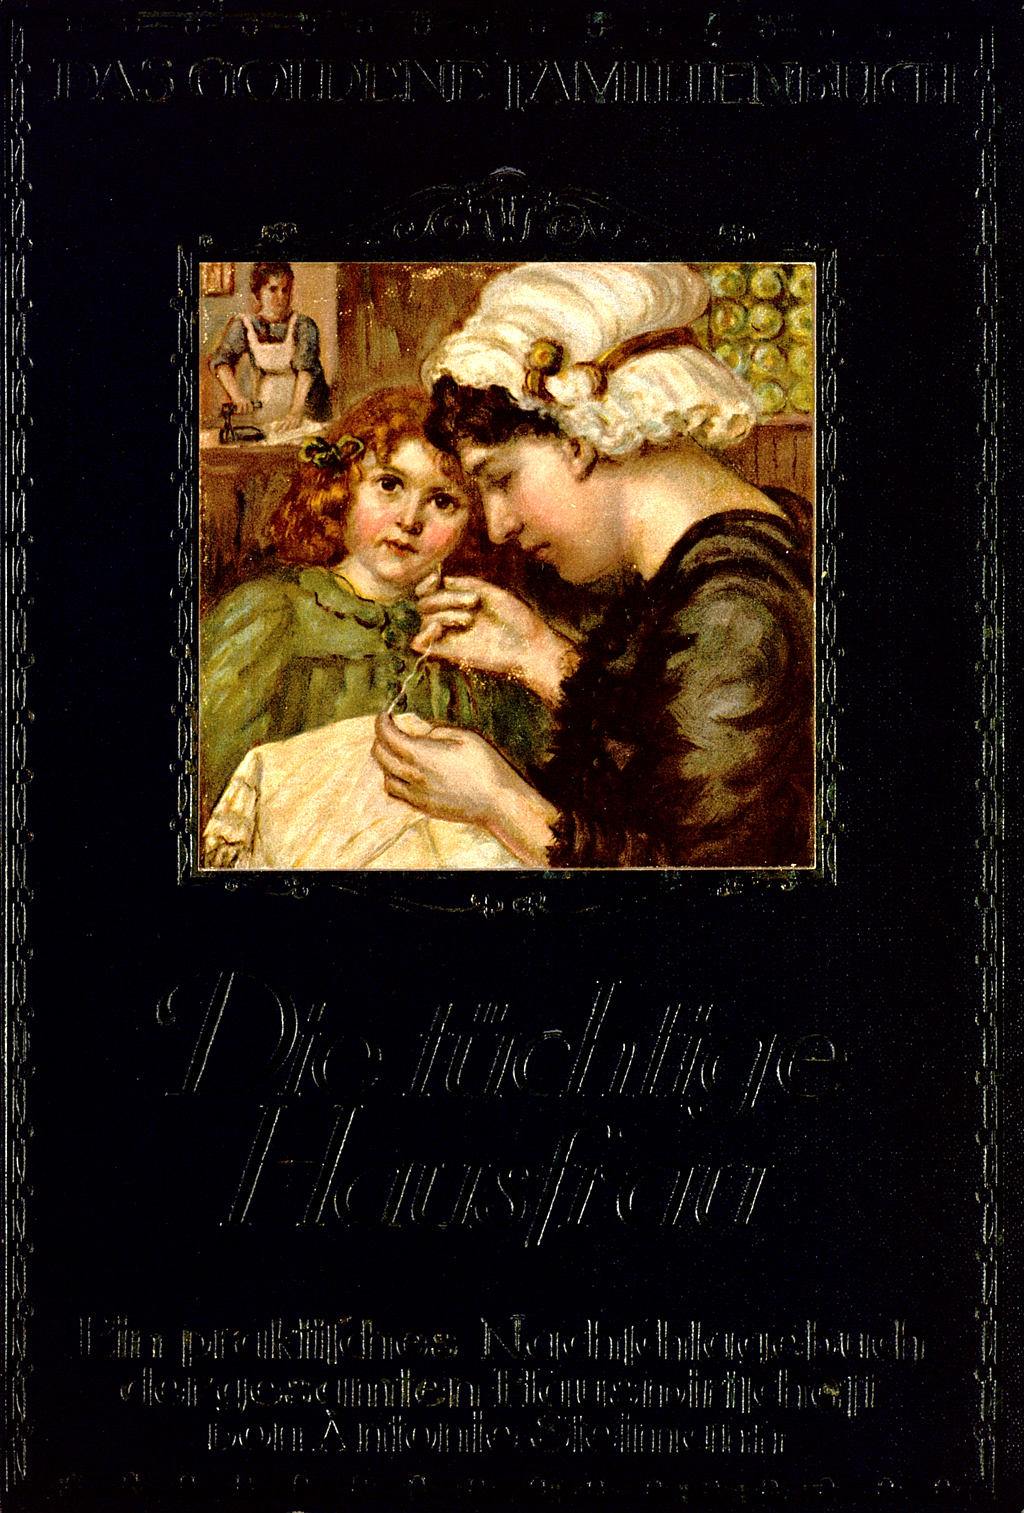 Buchcover von Antonie Steimann's "Die tüchtige Hausfrau".